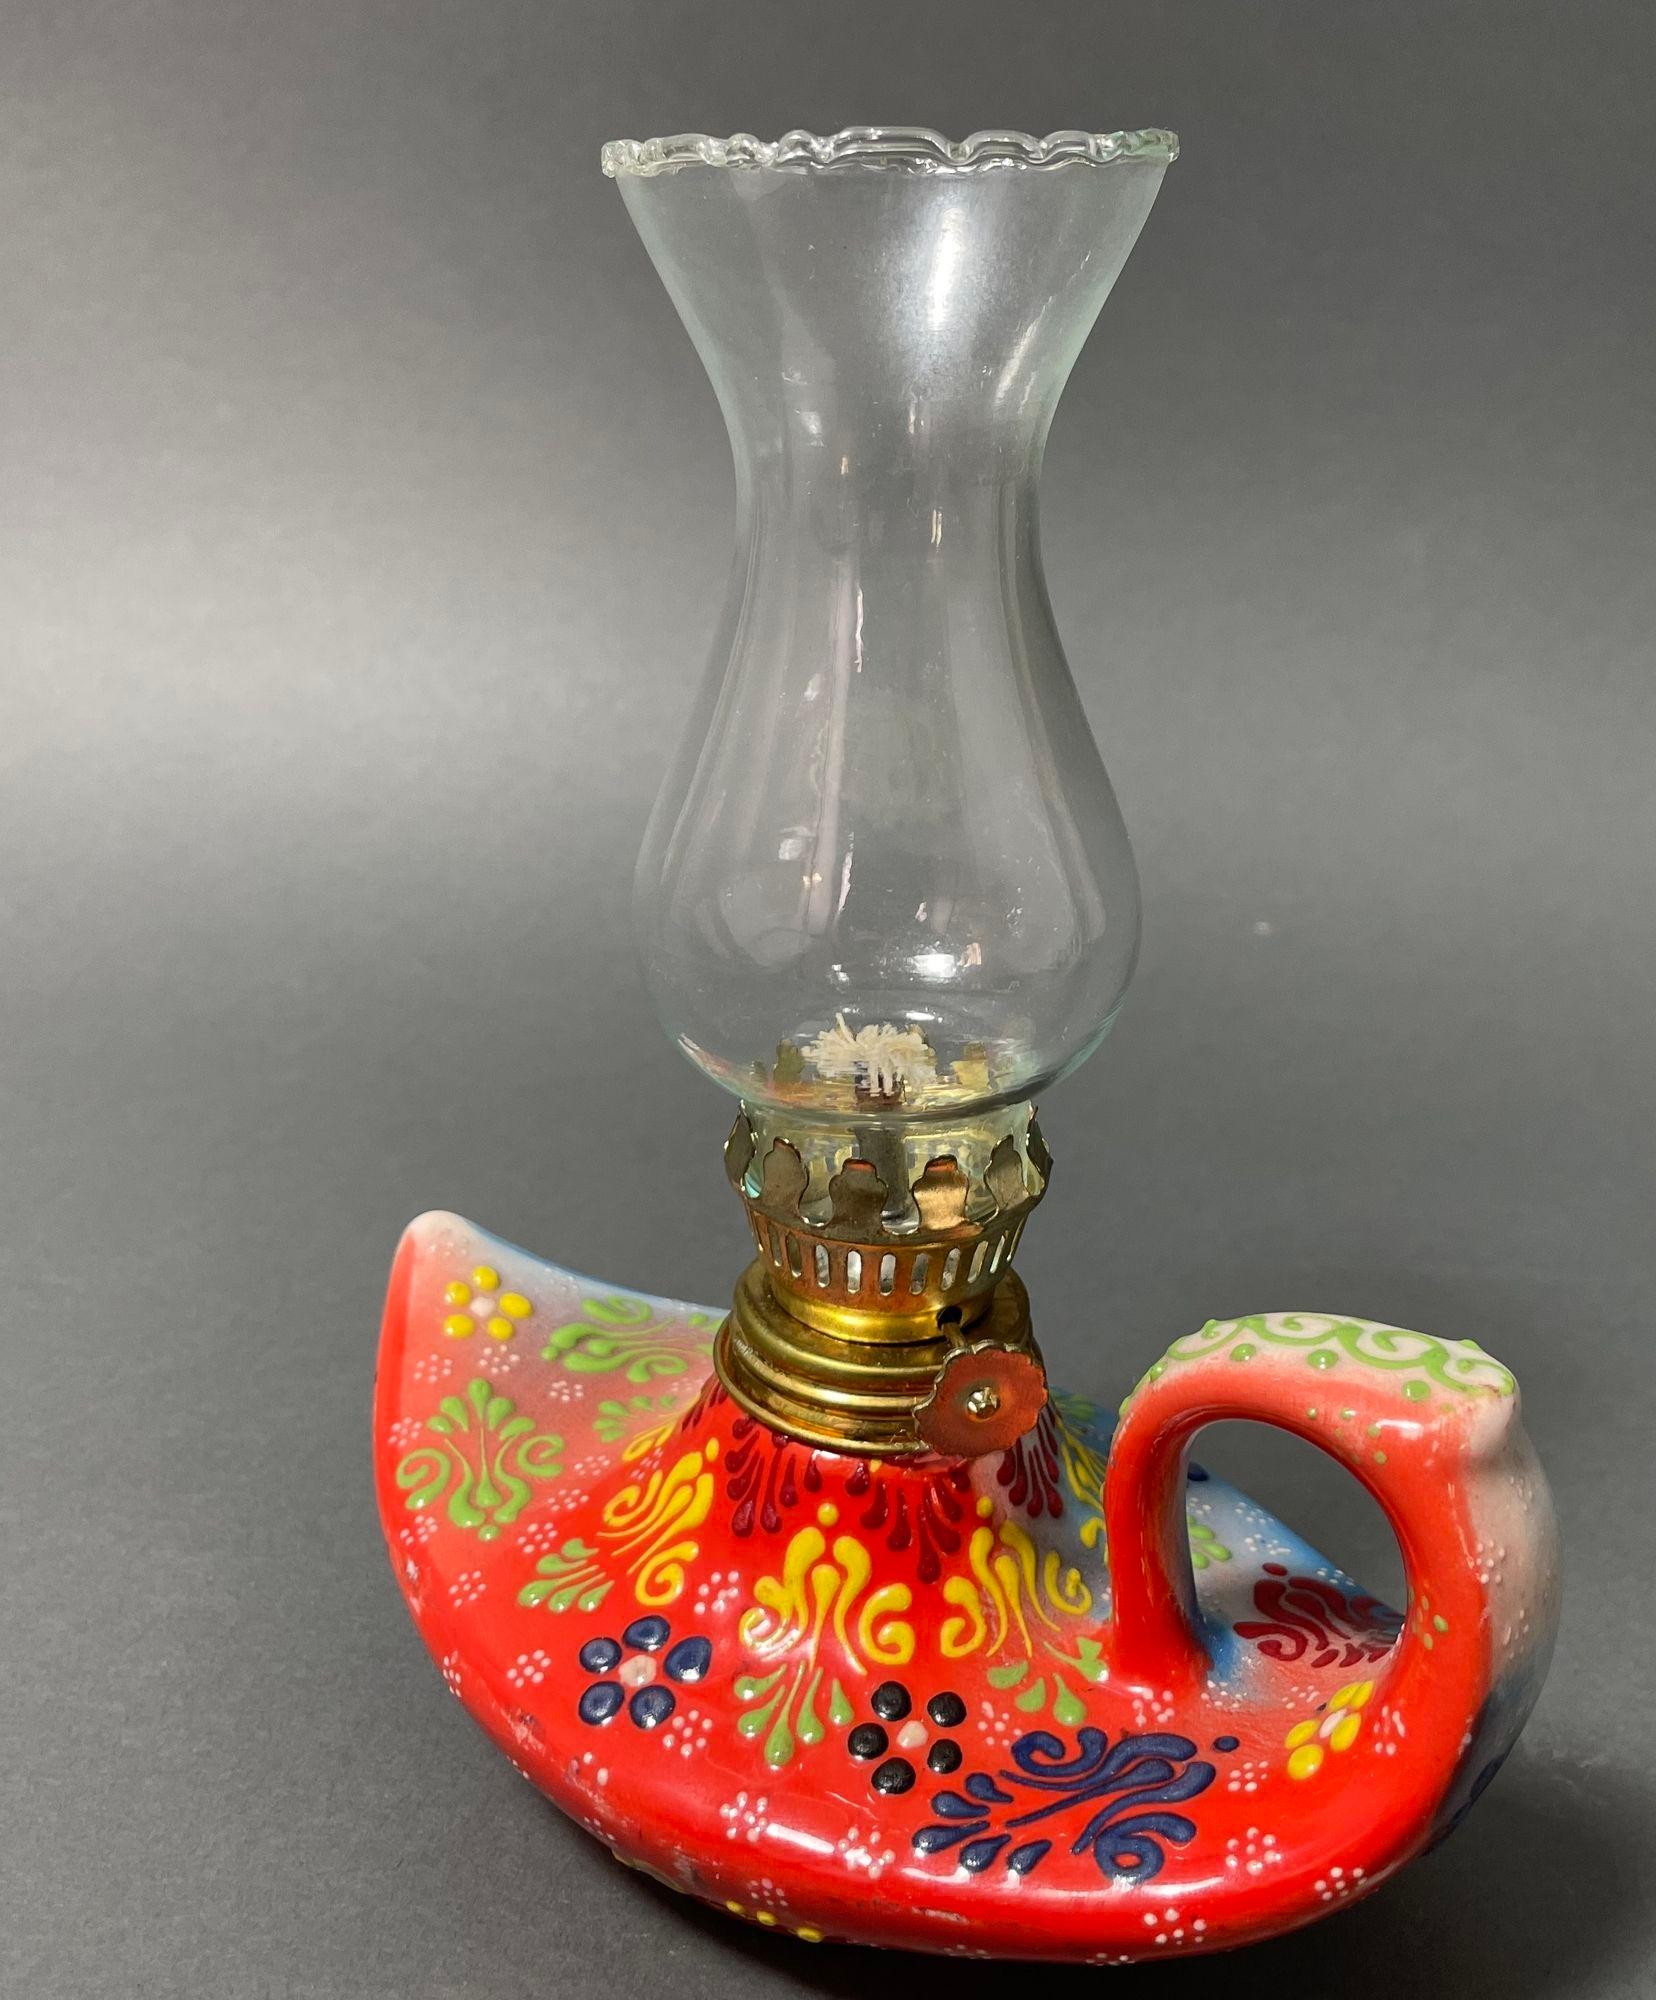 Vintage Aladdin Stil handgemachte rote Keramik türkischen Öllampe, Hurrikan Öllampe Laterne.
Diese Öllampe hat einen Tonsockel, der an eine Aladinlampe aus Tausendundeiner Nacht erinnert.
Texturierte, handbemalte Keramik mit traditionellem